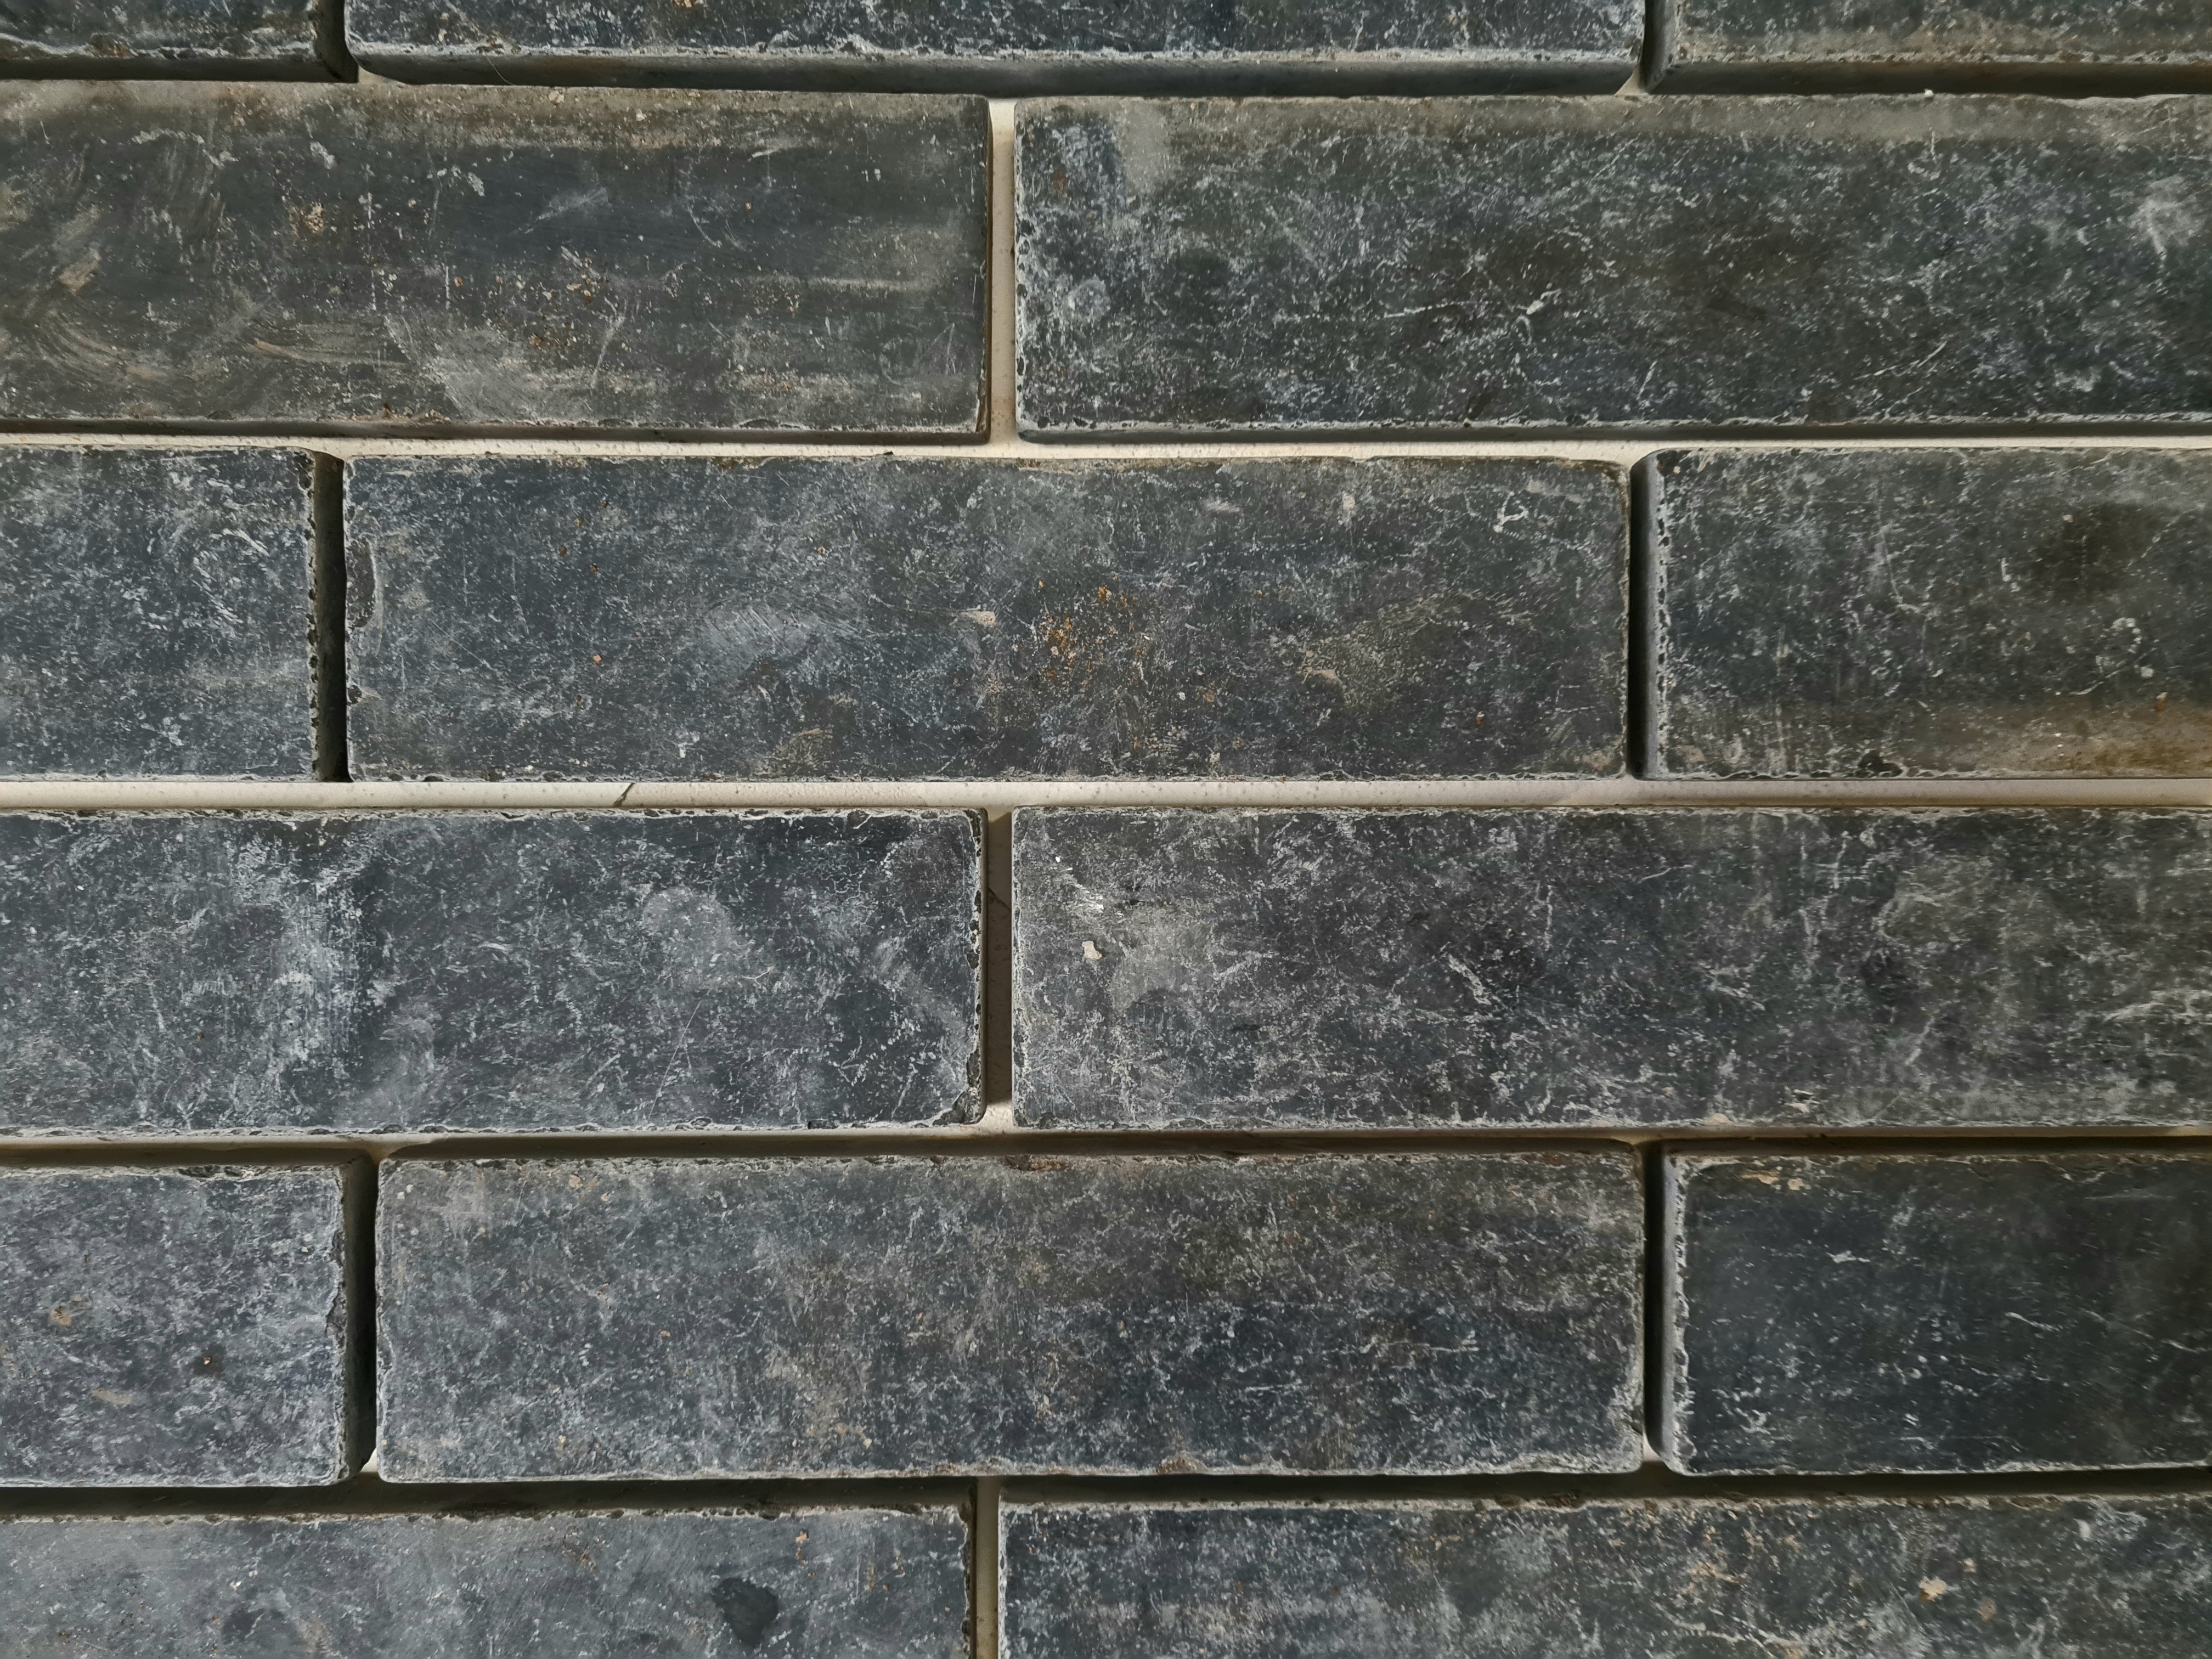 Waalklinkerjes Harappa Stone Black 20x5x1,5 cm